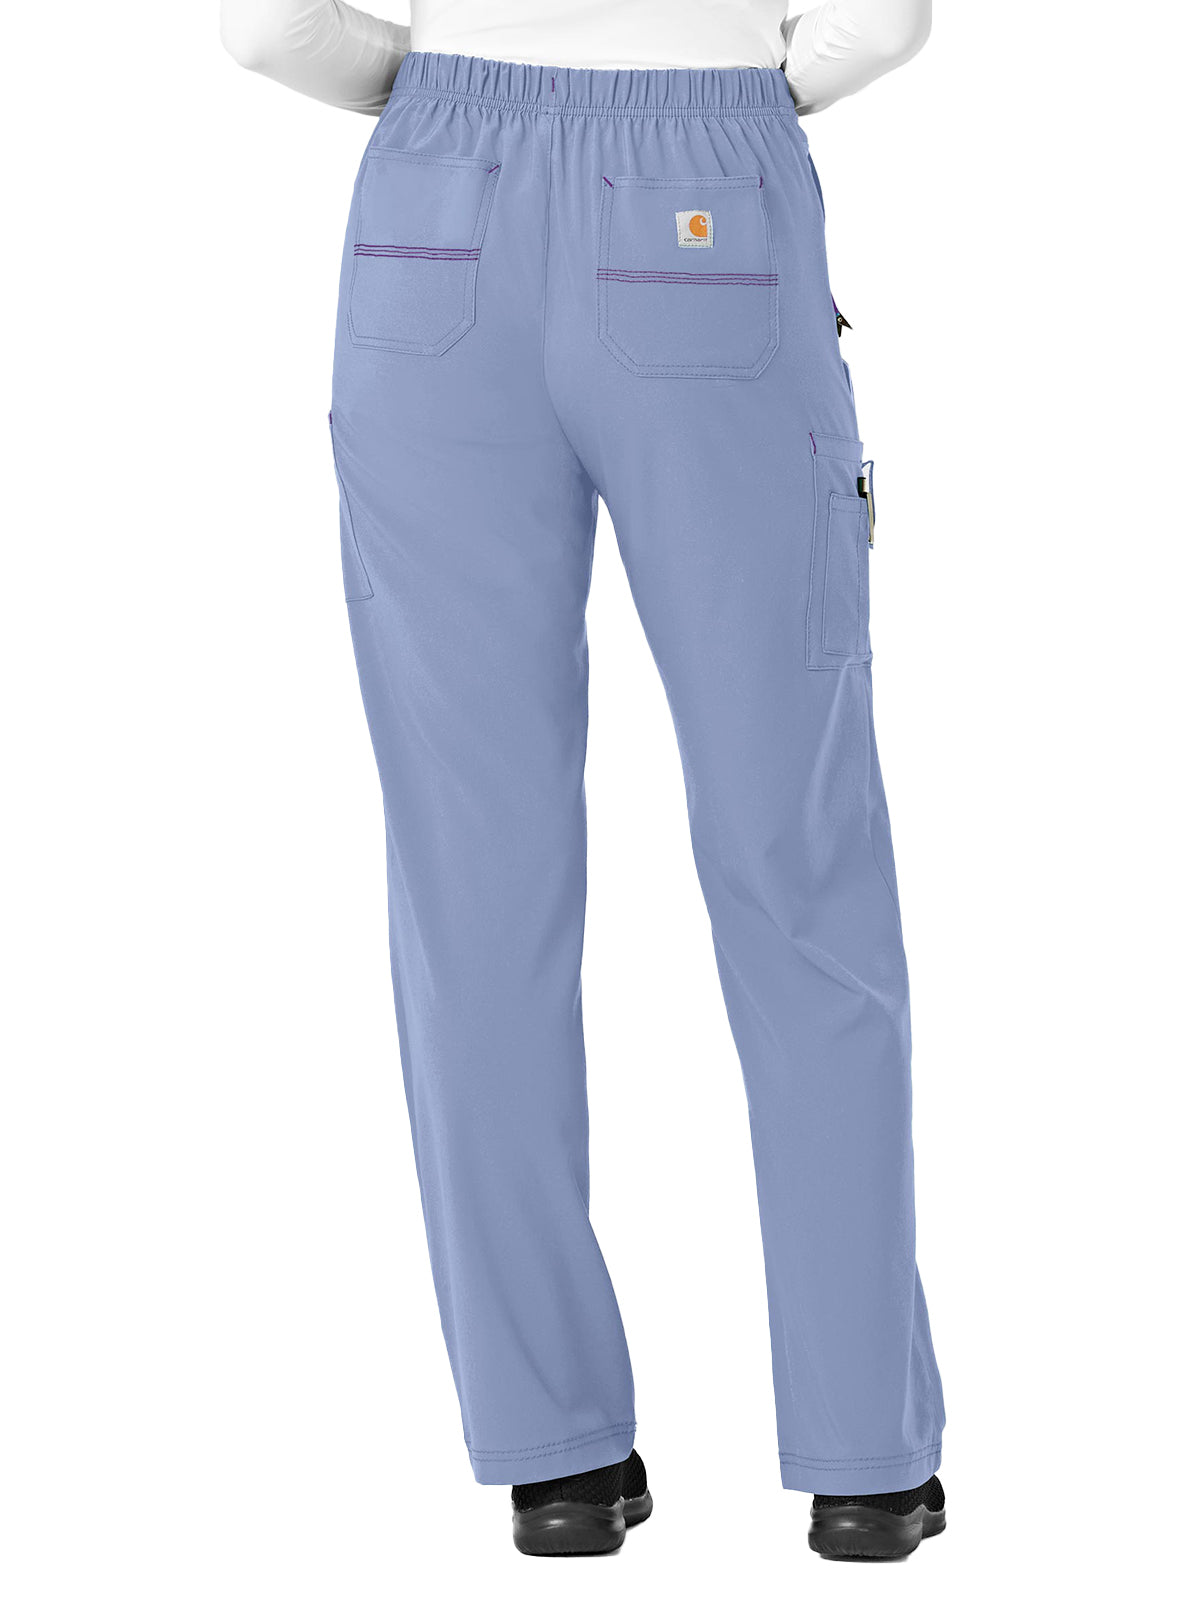 Women's Utility Boot Cut Pant - C52110 - Ceil Blue